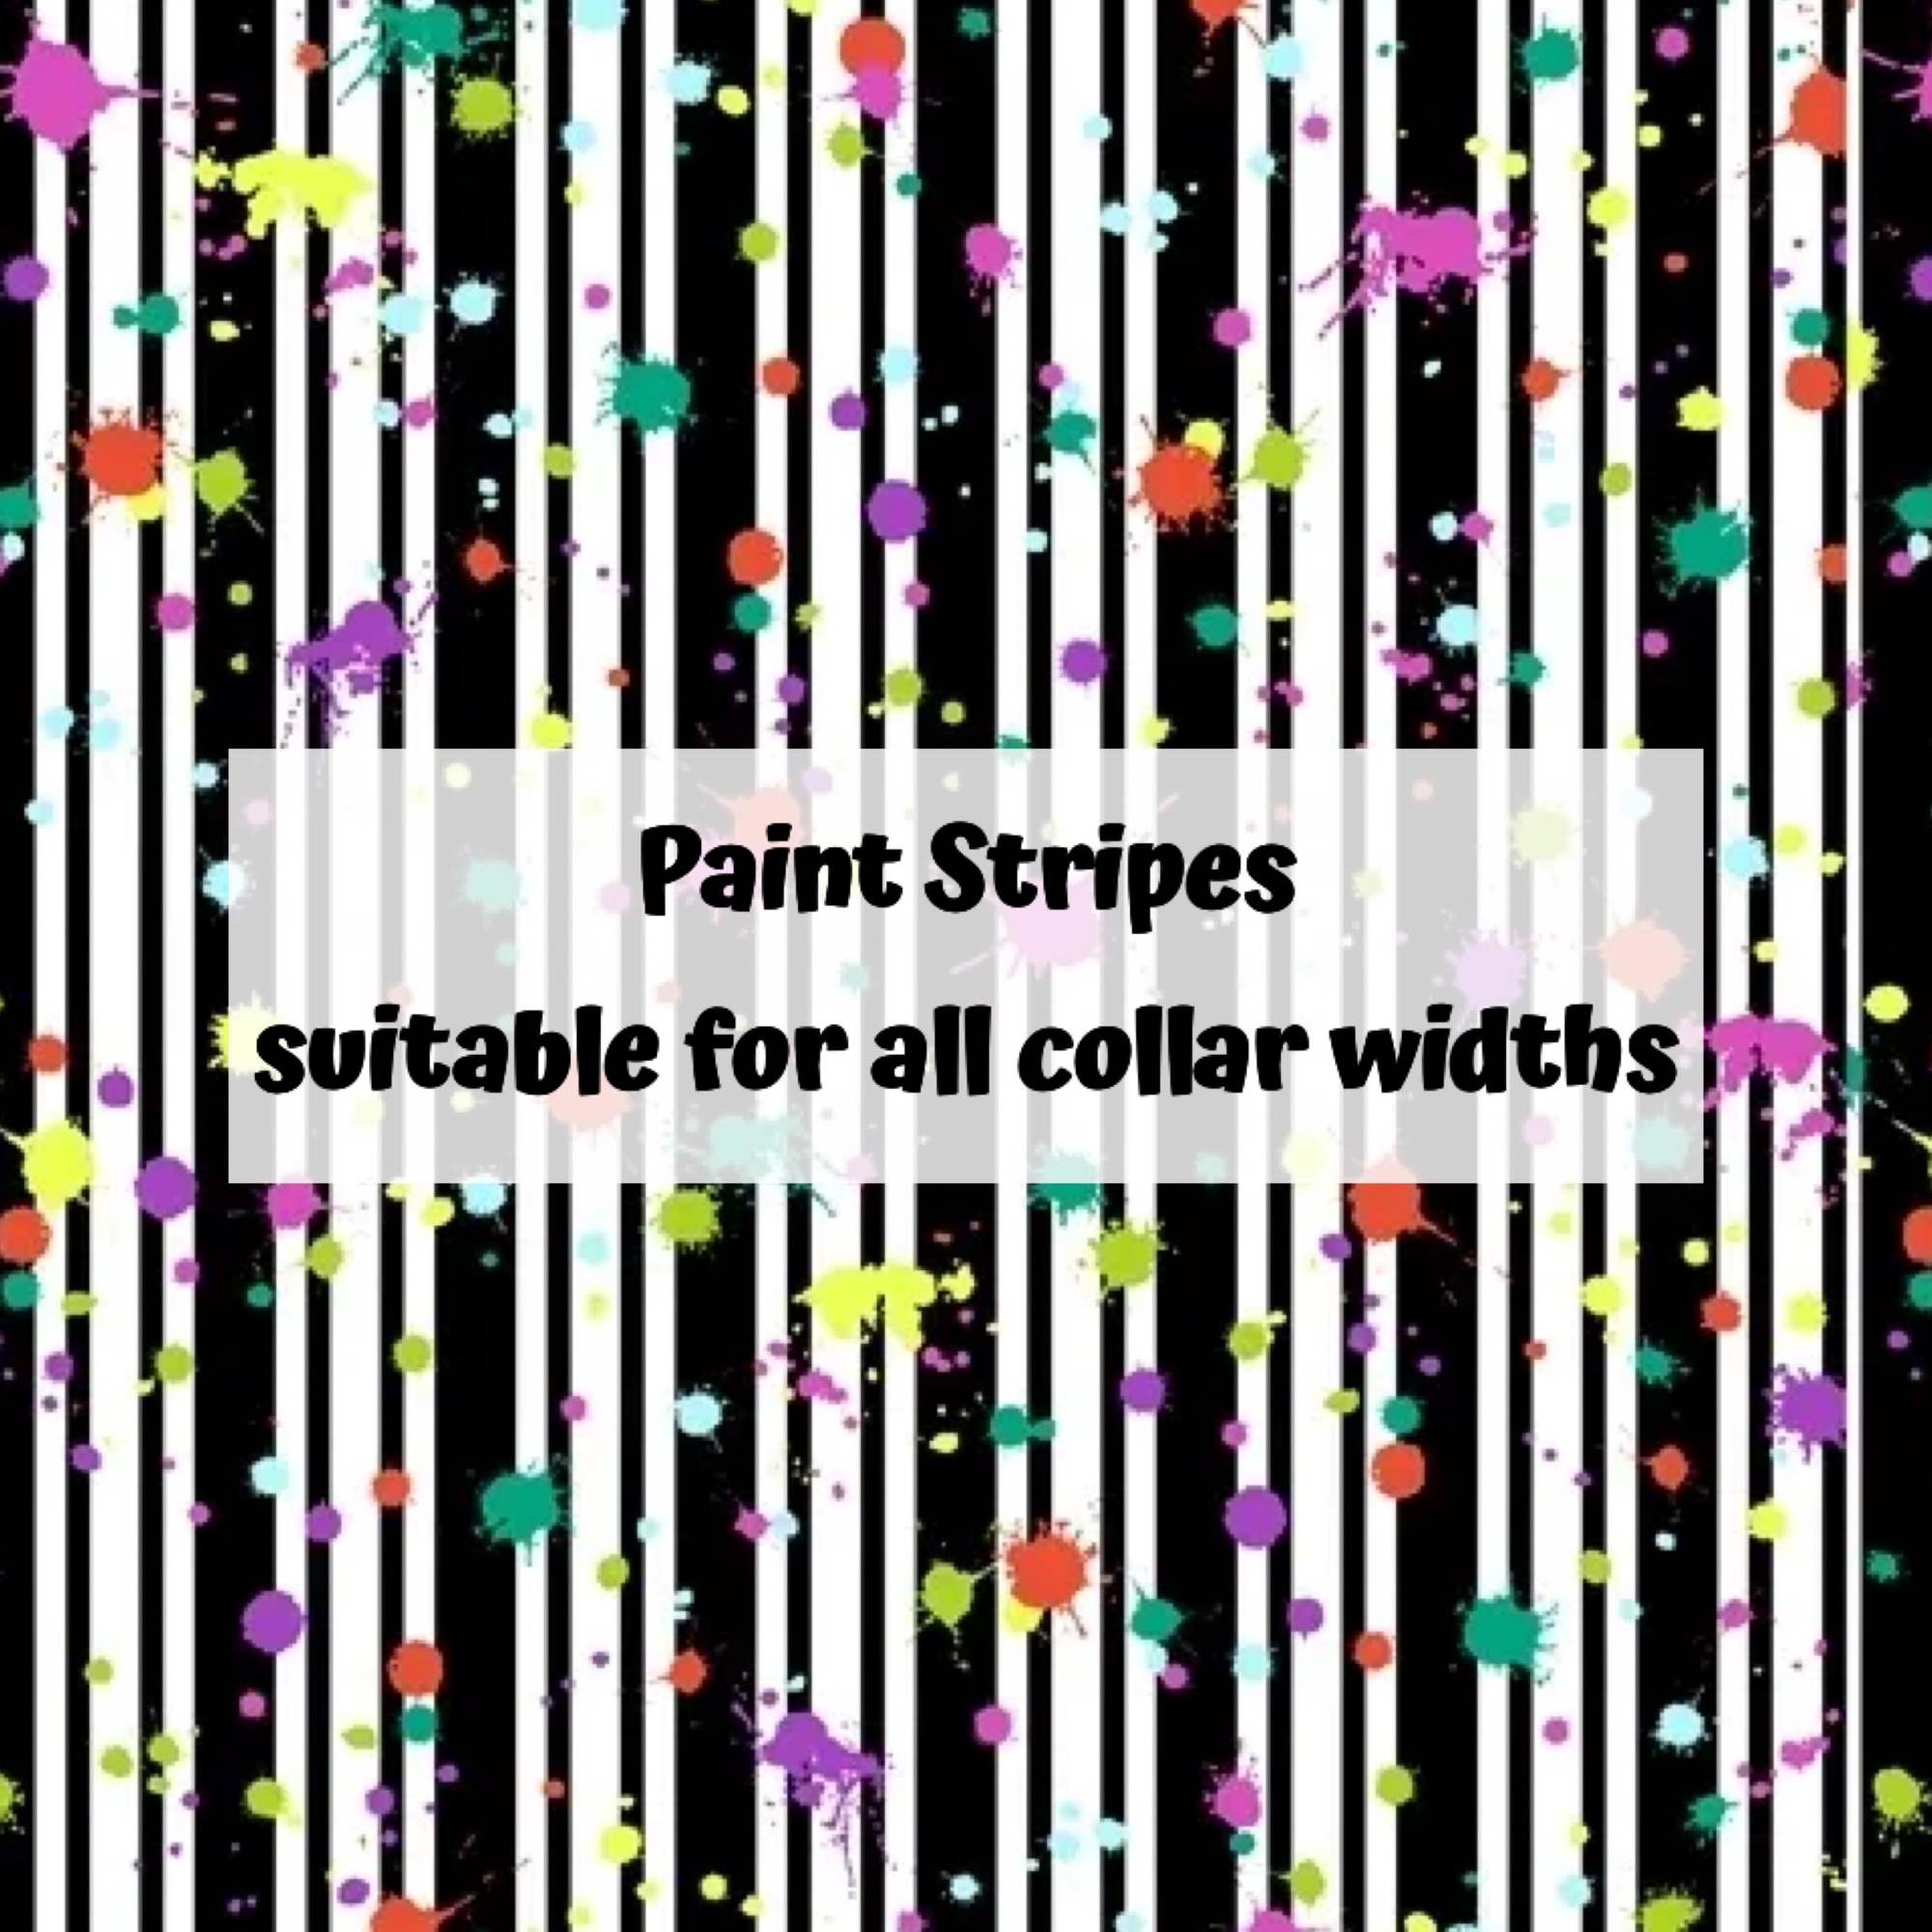 Paint Stripes